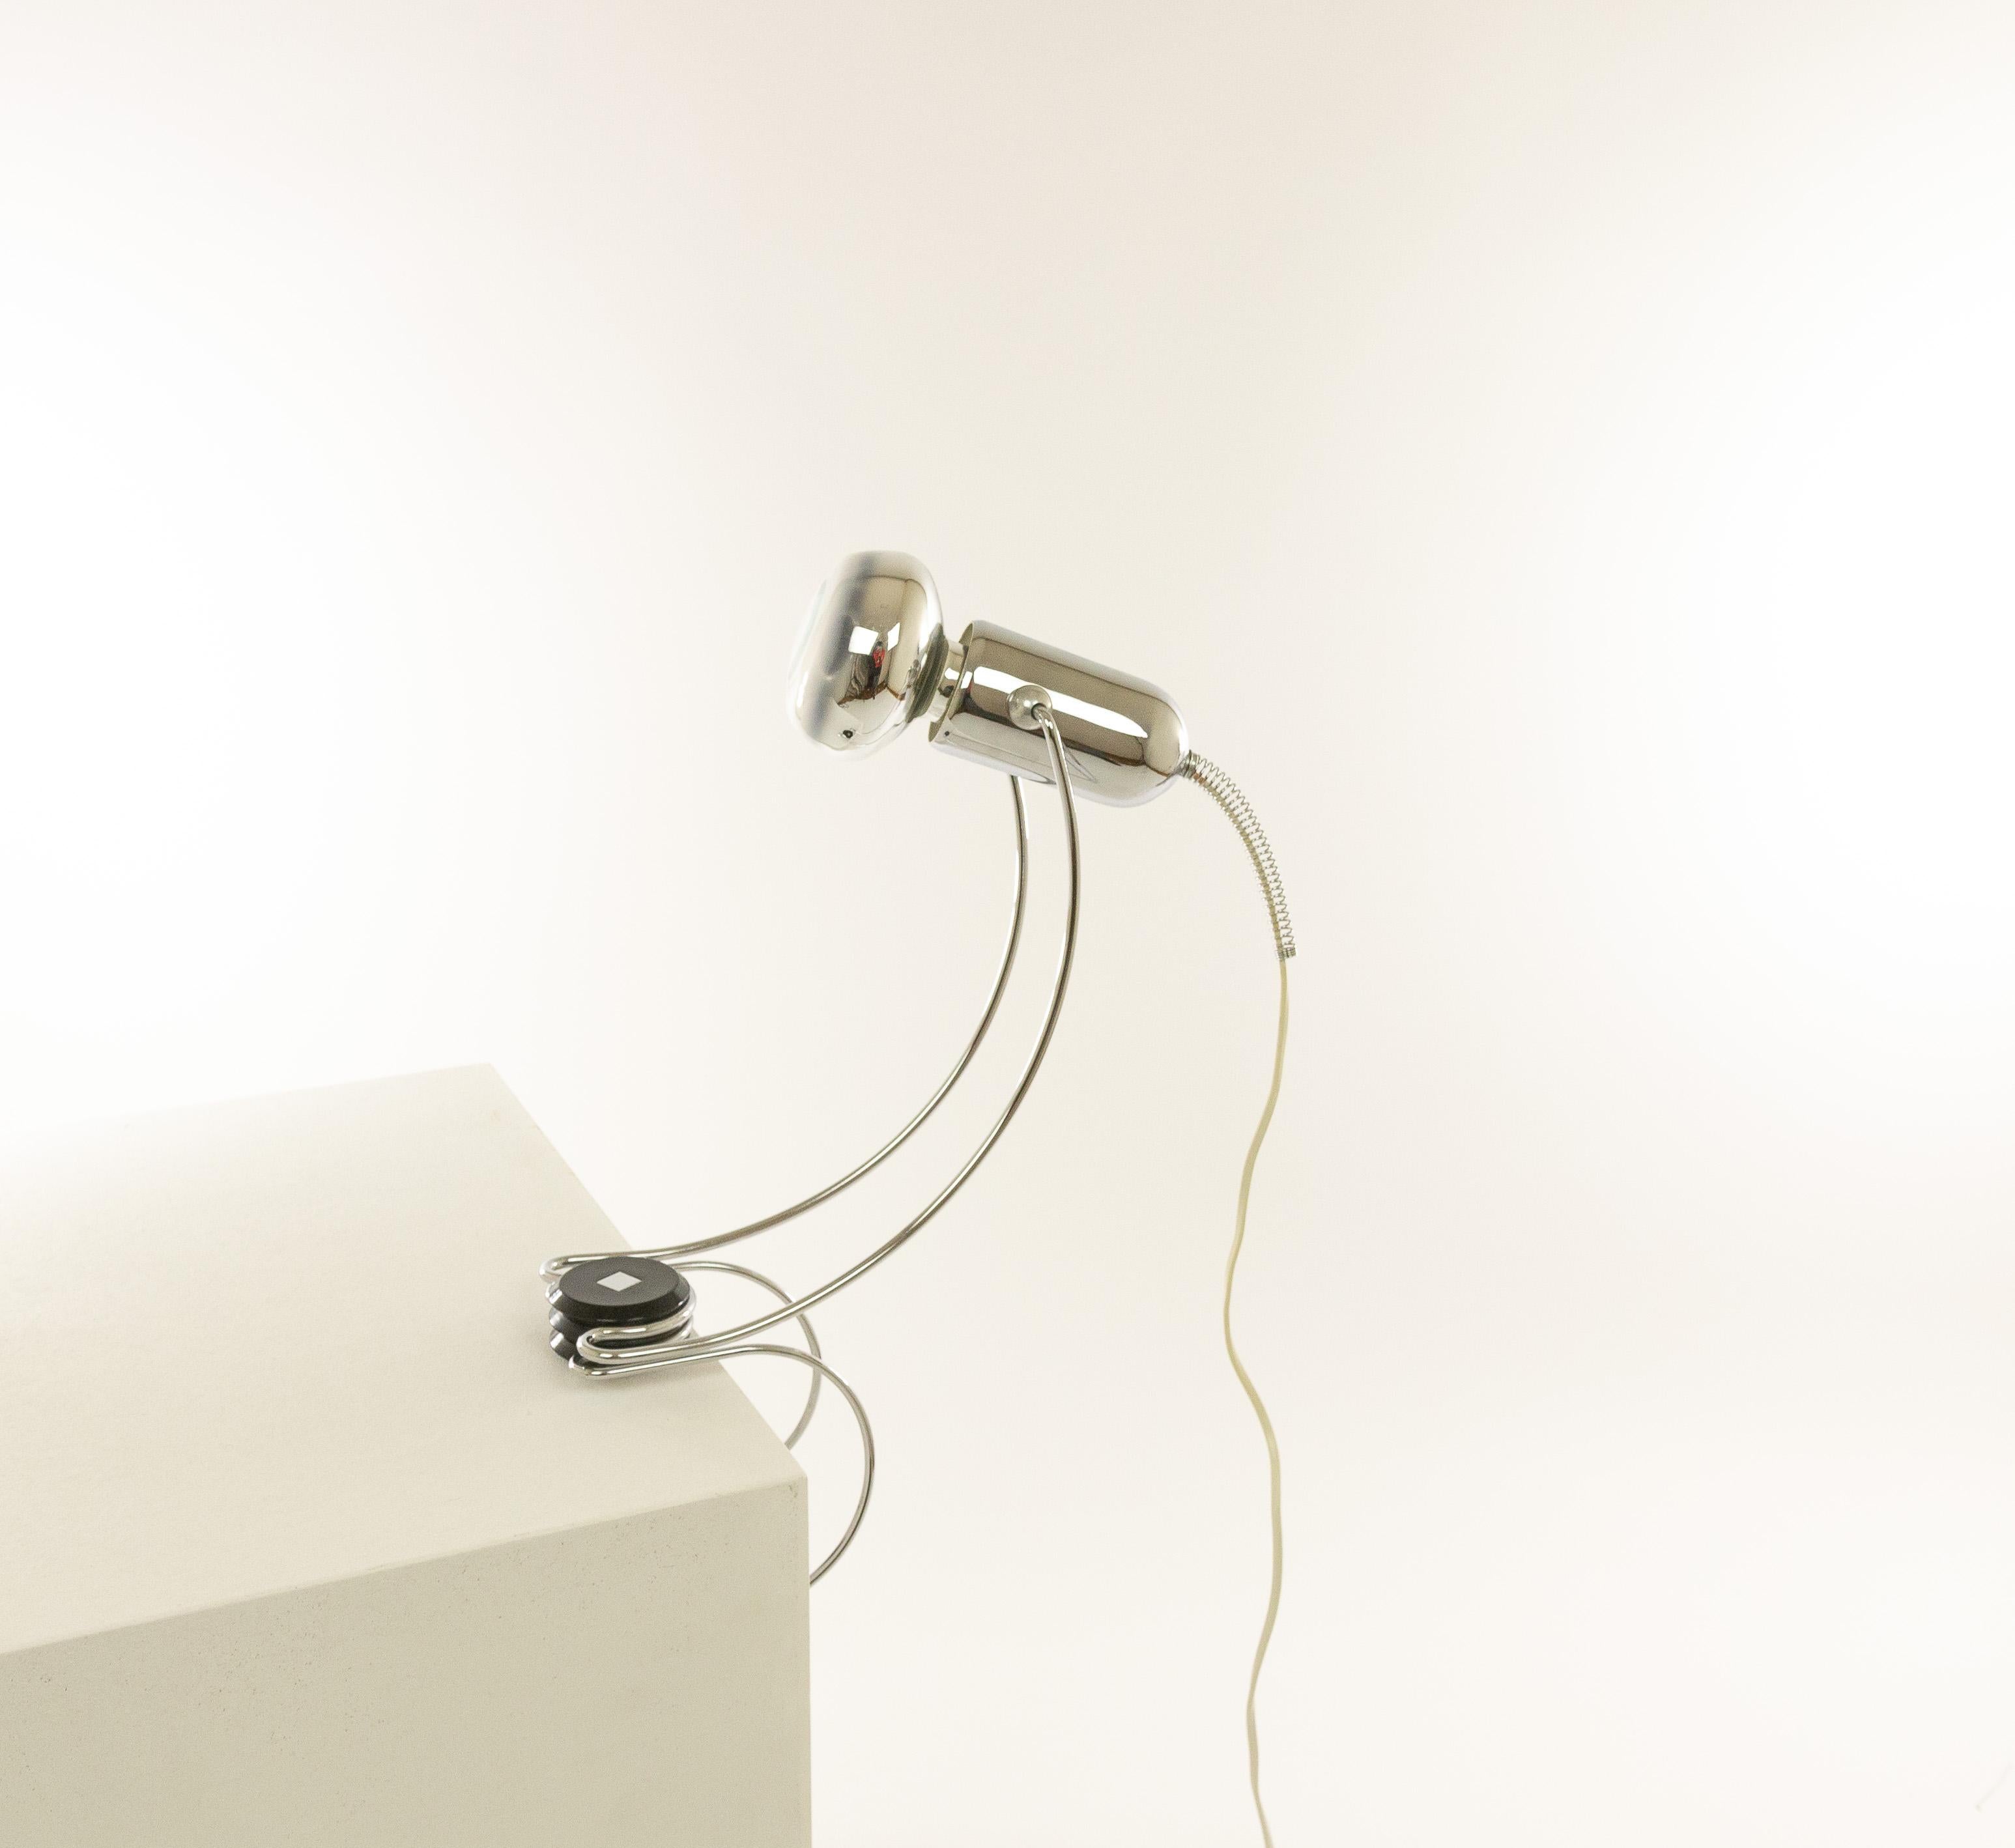 Lampe de table réglable en chrome conçue par Francesco Fois et fabriquée par Reggiani dans les années 1960.

La lampe, avec ses élégantes formes rondes, peut être fixée avec sa partie inférieure, par exemple sur un plateau de table. Le spot